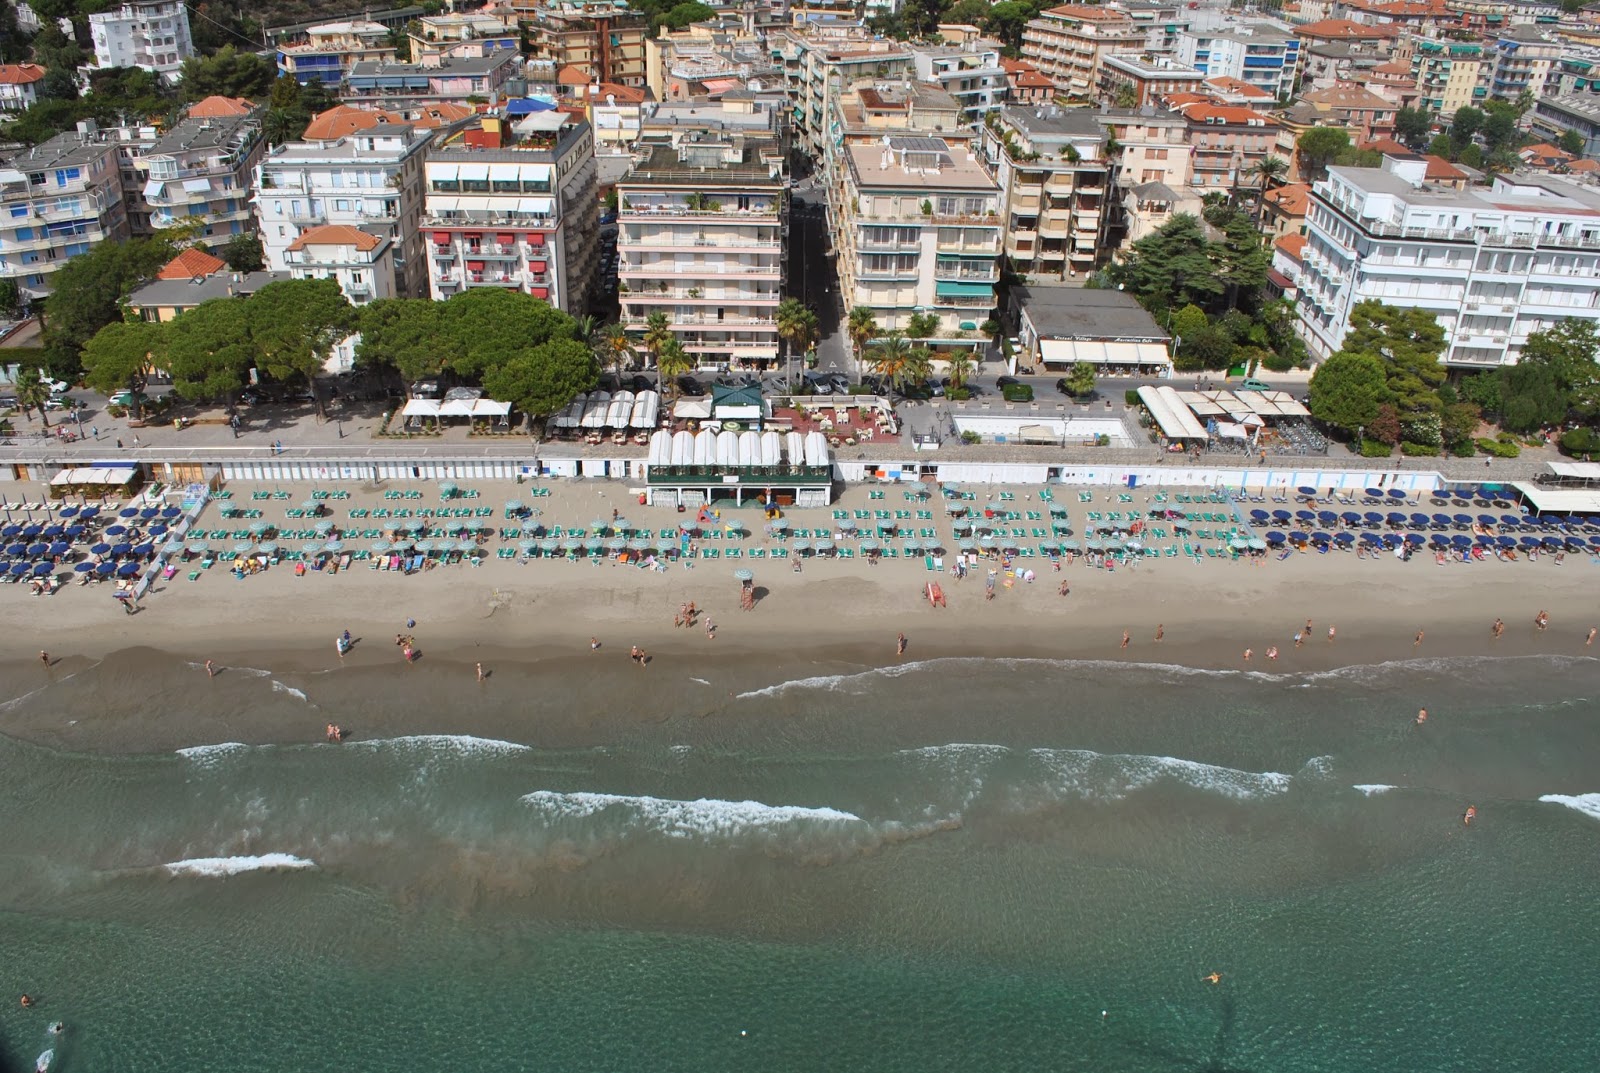 Foto von Spiaggia Attrezzata strandresort-gebiet